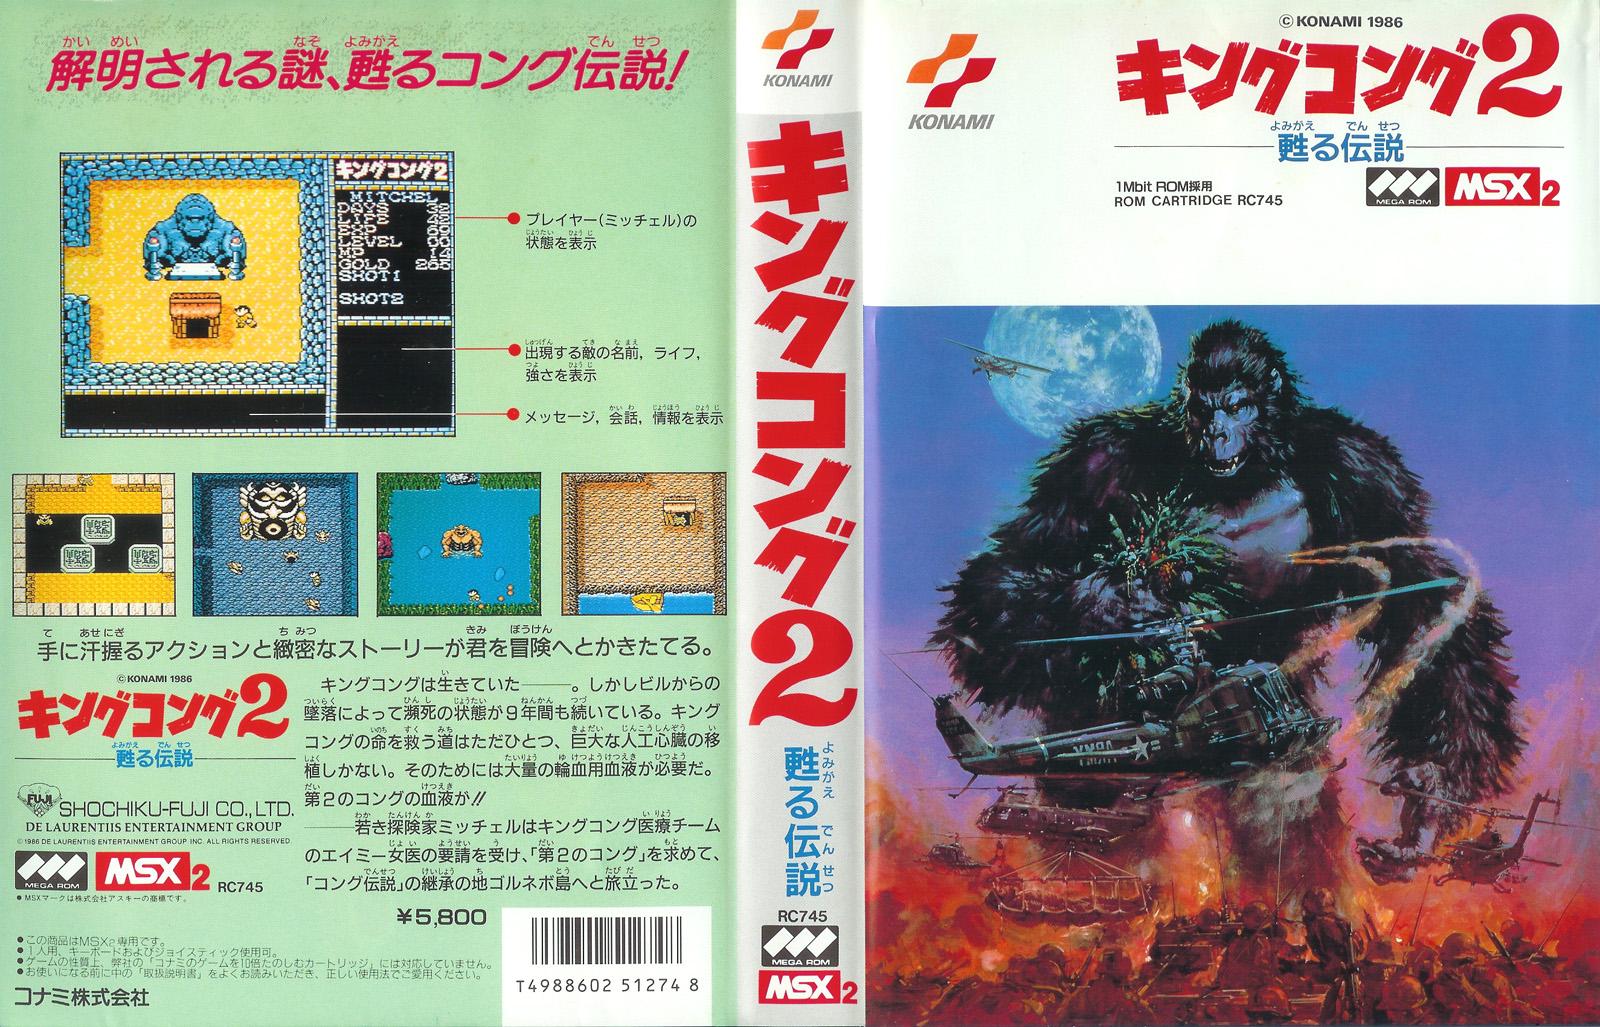 Ardor gaming msx3. MSX games. Zet Gaming msx3. Konami 1986.